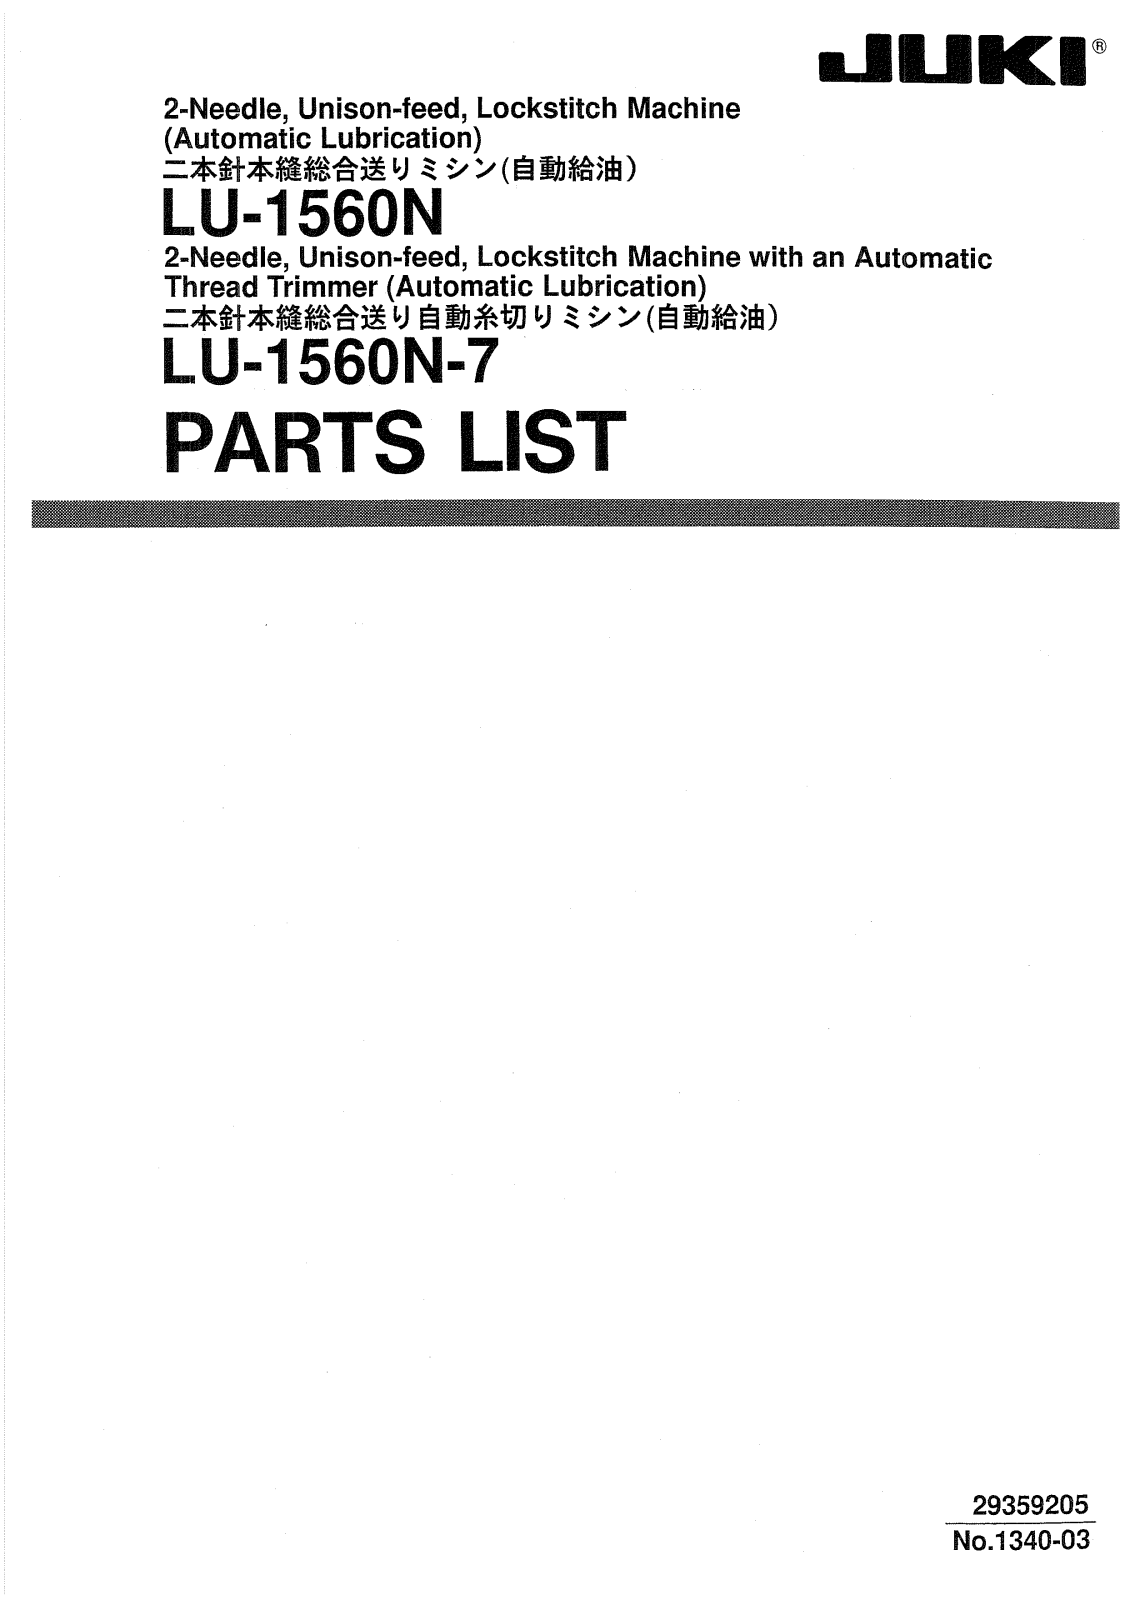 JUKI LU-1560N, LU-1560N-7 Parts List